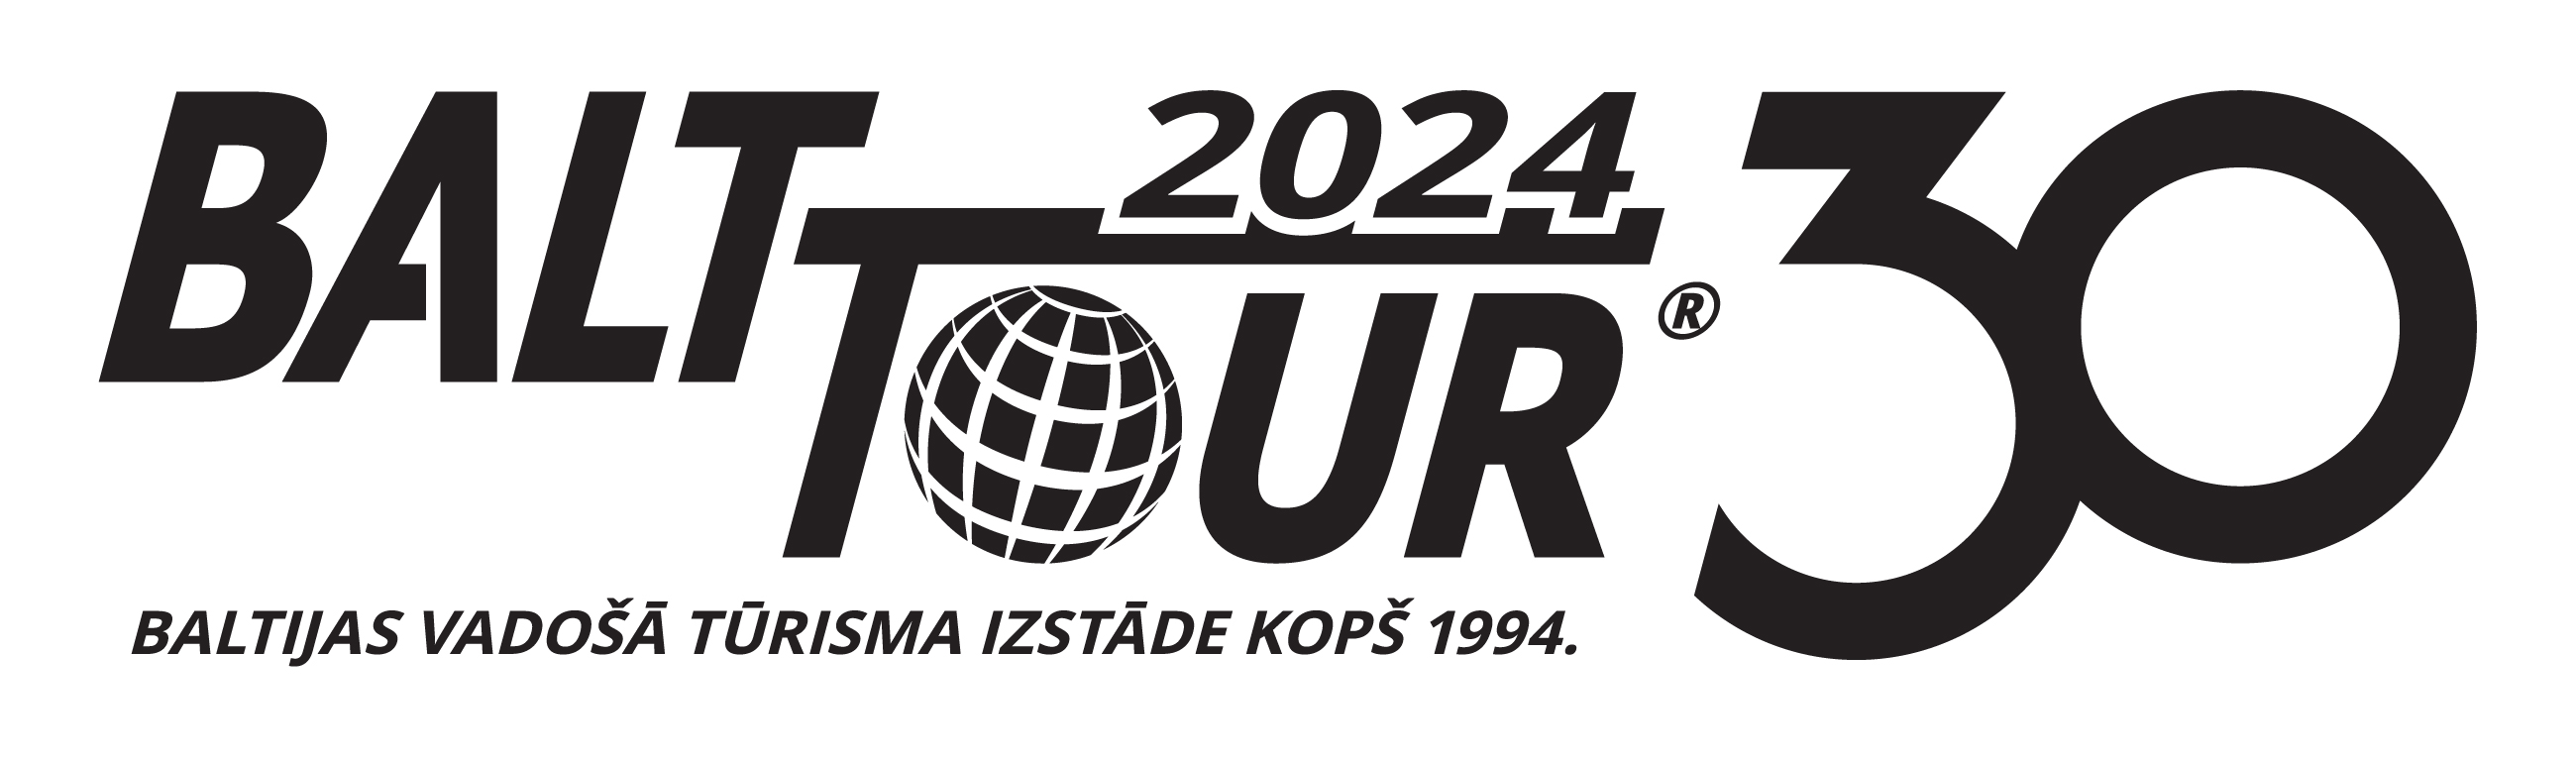 Logo - Balttour 2024 (black and white)